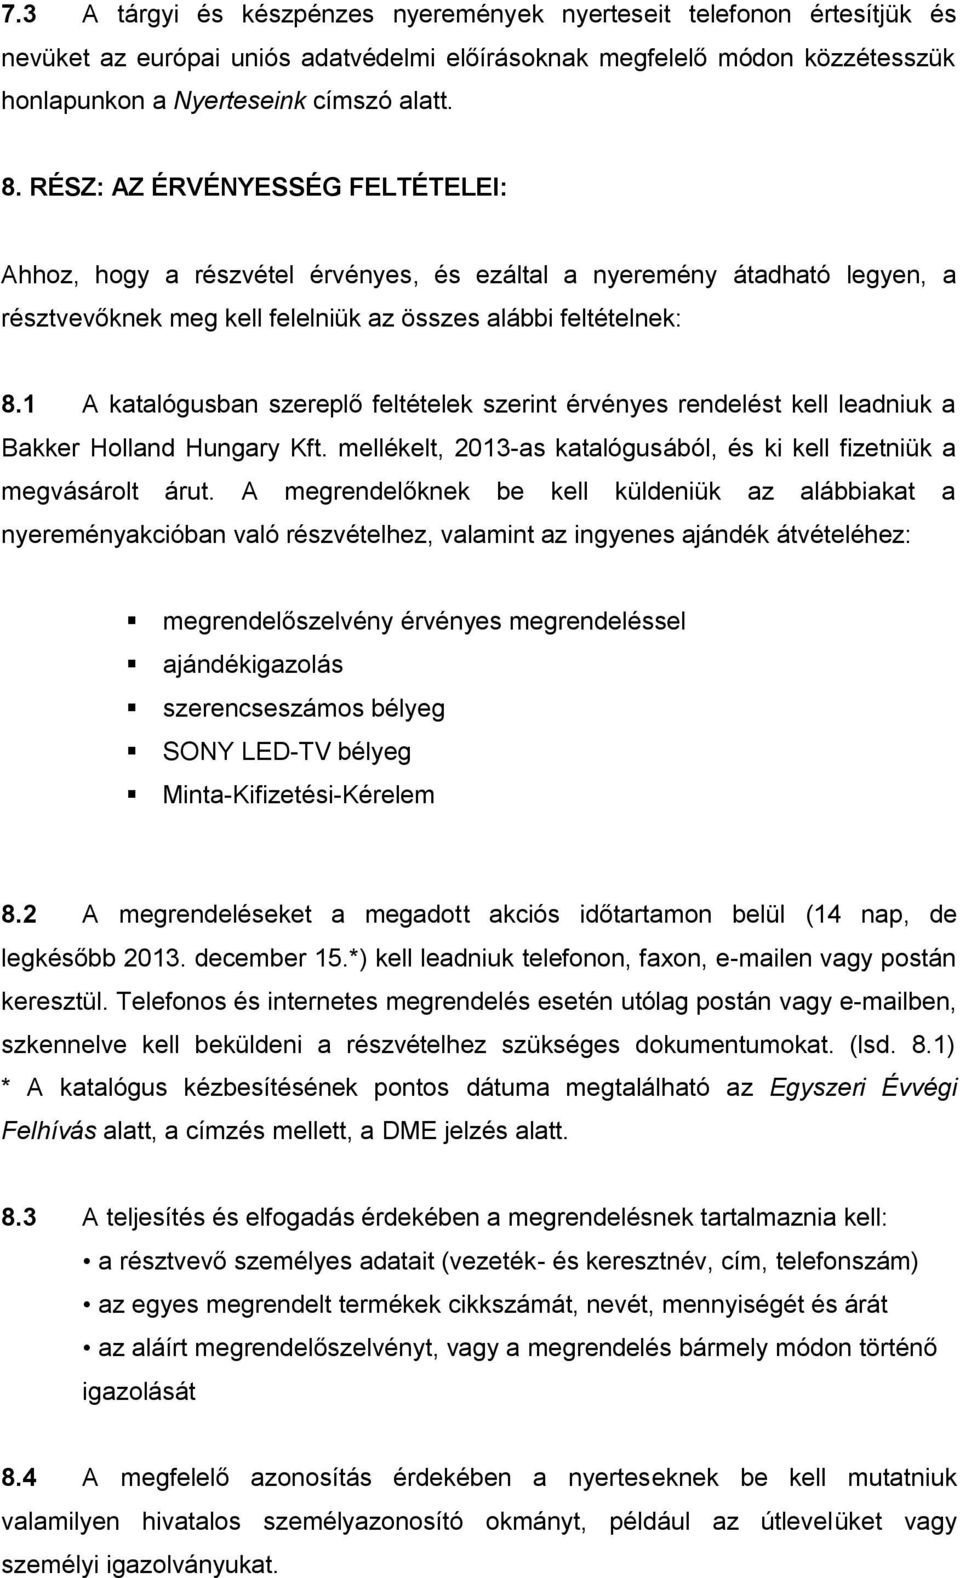 1 A katalógusban szereplő feltételek szerint érvényes rendelést kell leadniuk a Bakker Holland Hungary Kft. mellékelt, 2013-as katalógusából, és ki kell fizetniük a megvásárolt árut.